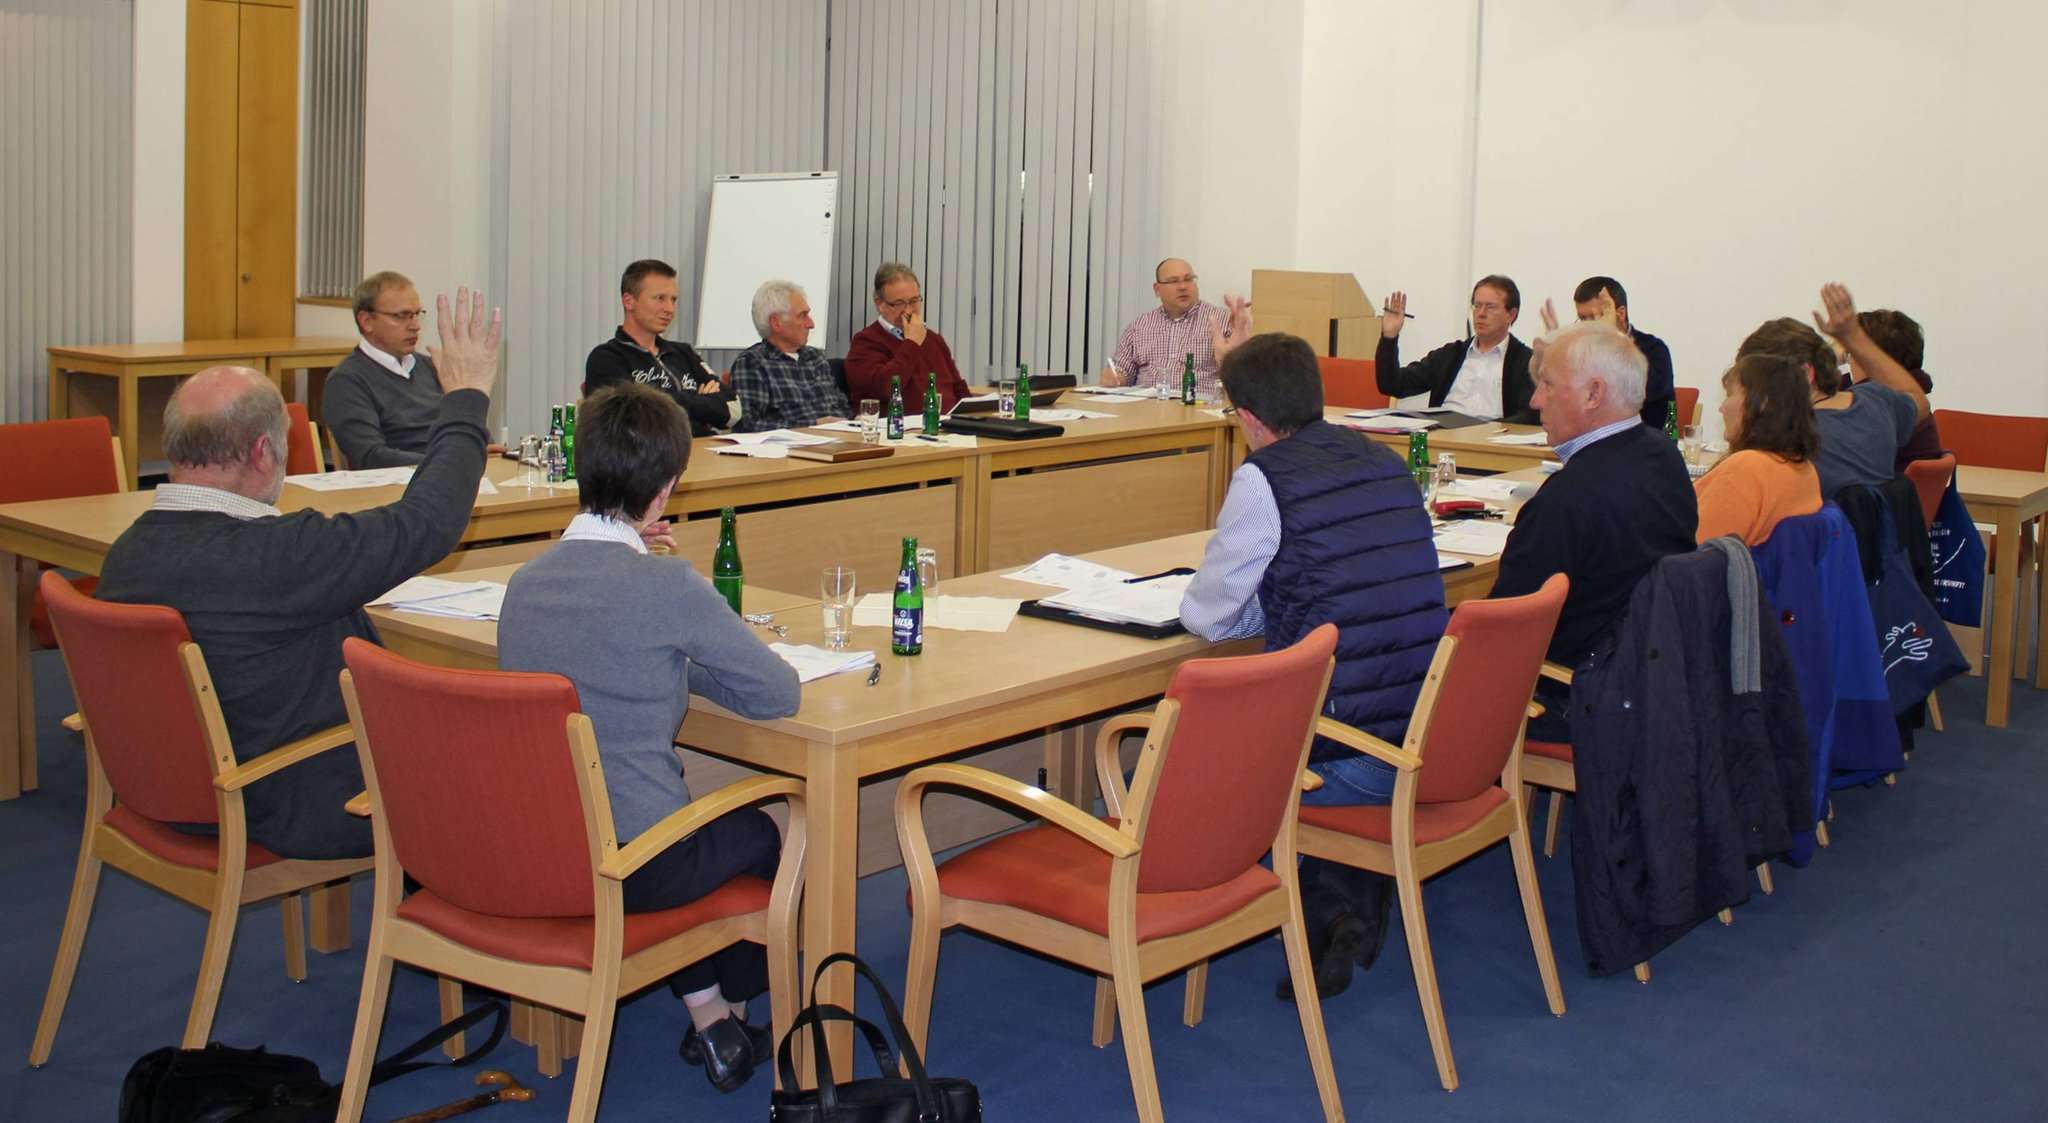 Der Vorschlag der SPD-Fraktion bezüglich der Aufwandsentschädigungen wurde mehrheitlich angenommen. Foto: Henning Leeske